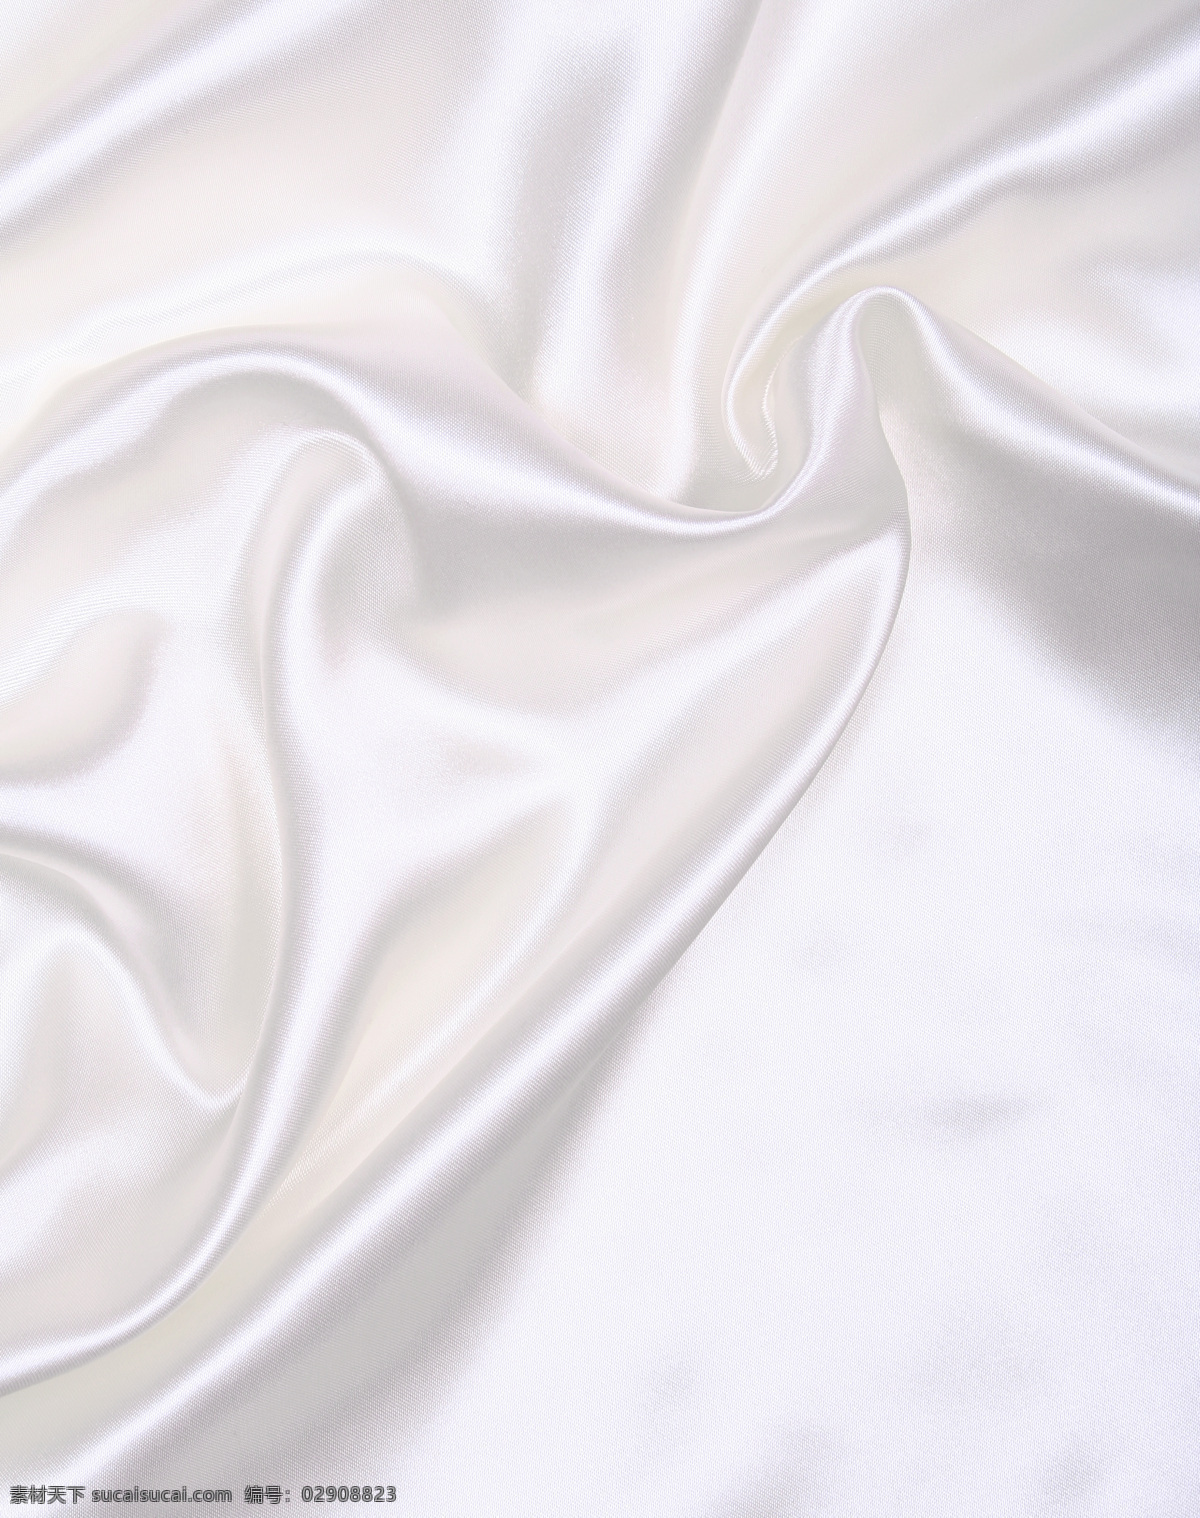 白色 绸缎 皱纹 折皱 绸布 织物 纺织品 面料 布料 珠宝服饰 生活百科